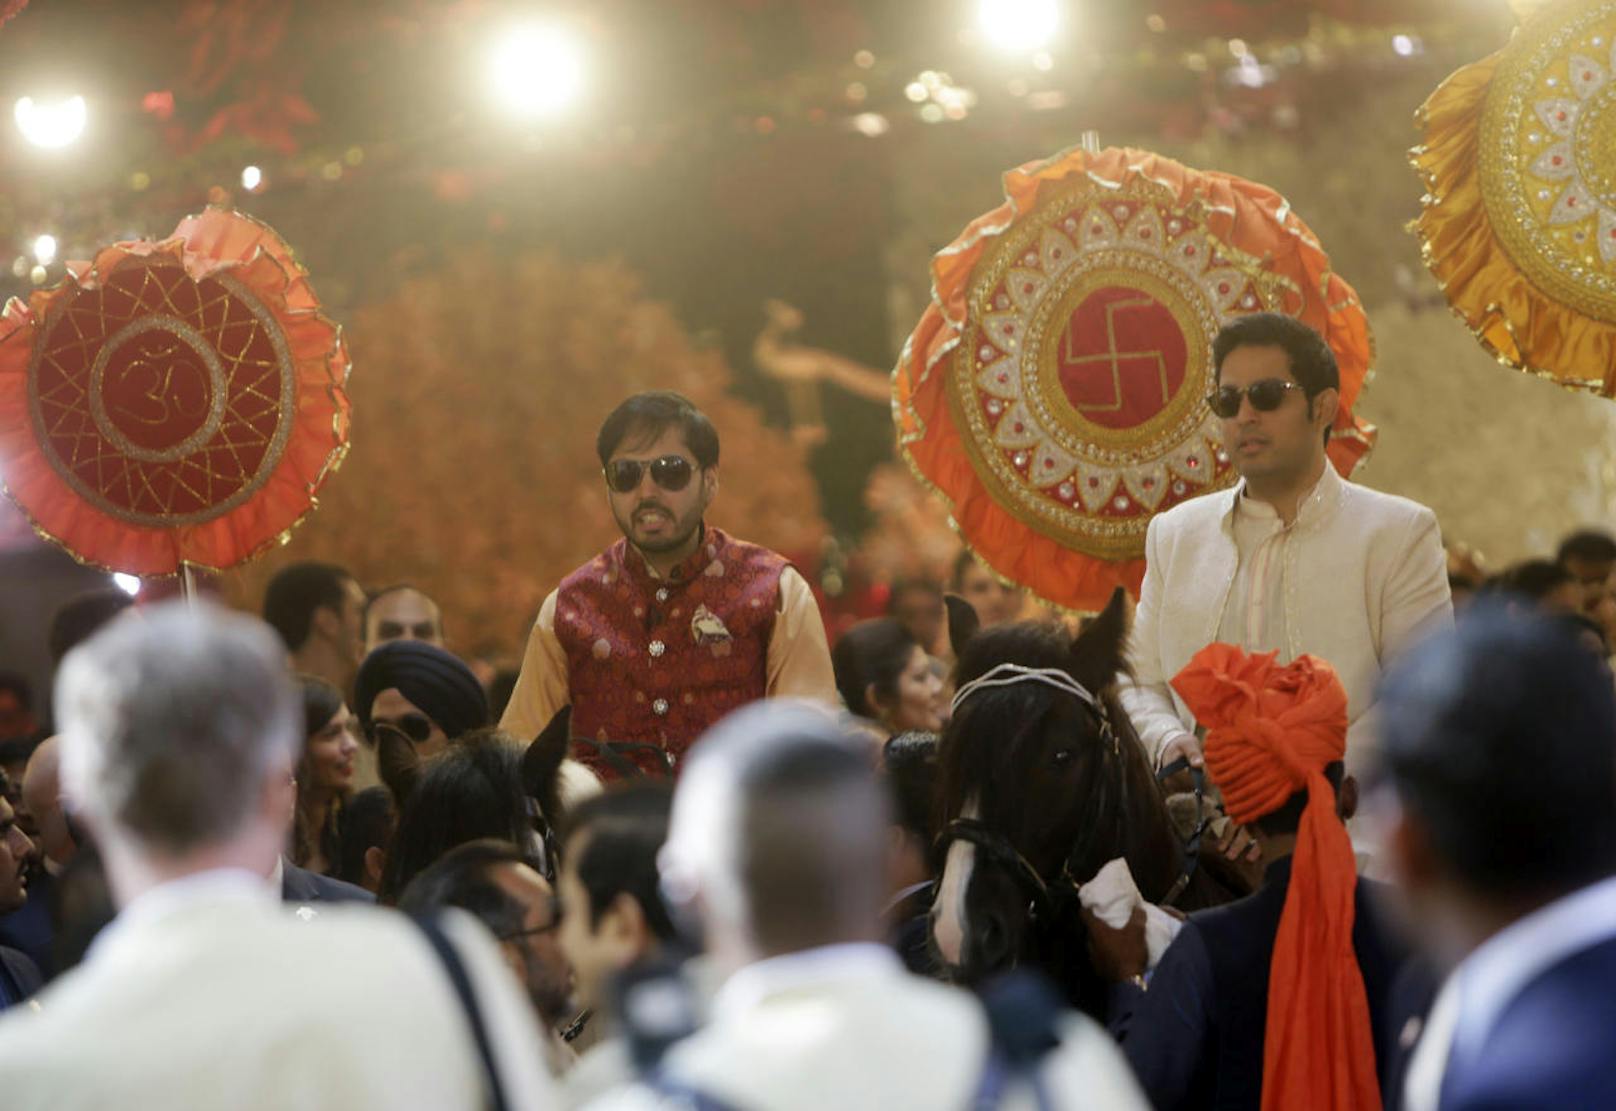 Hochzeitszug: Die Brüder der Braut Anant (links) und Aakash hoch zu Ross mit indischen Glückssymbolen